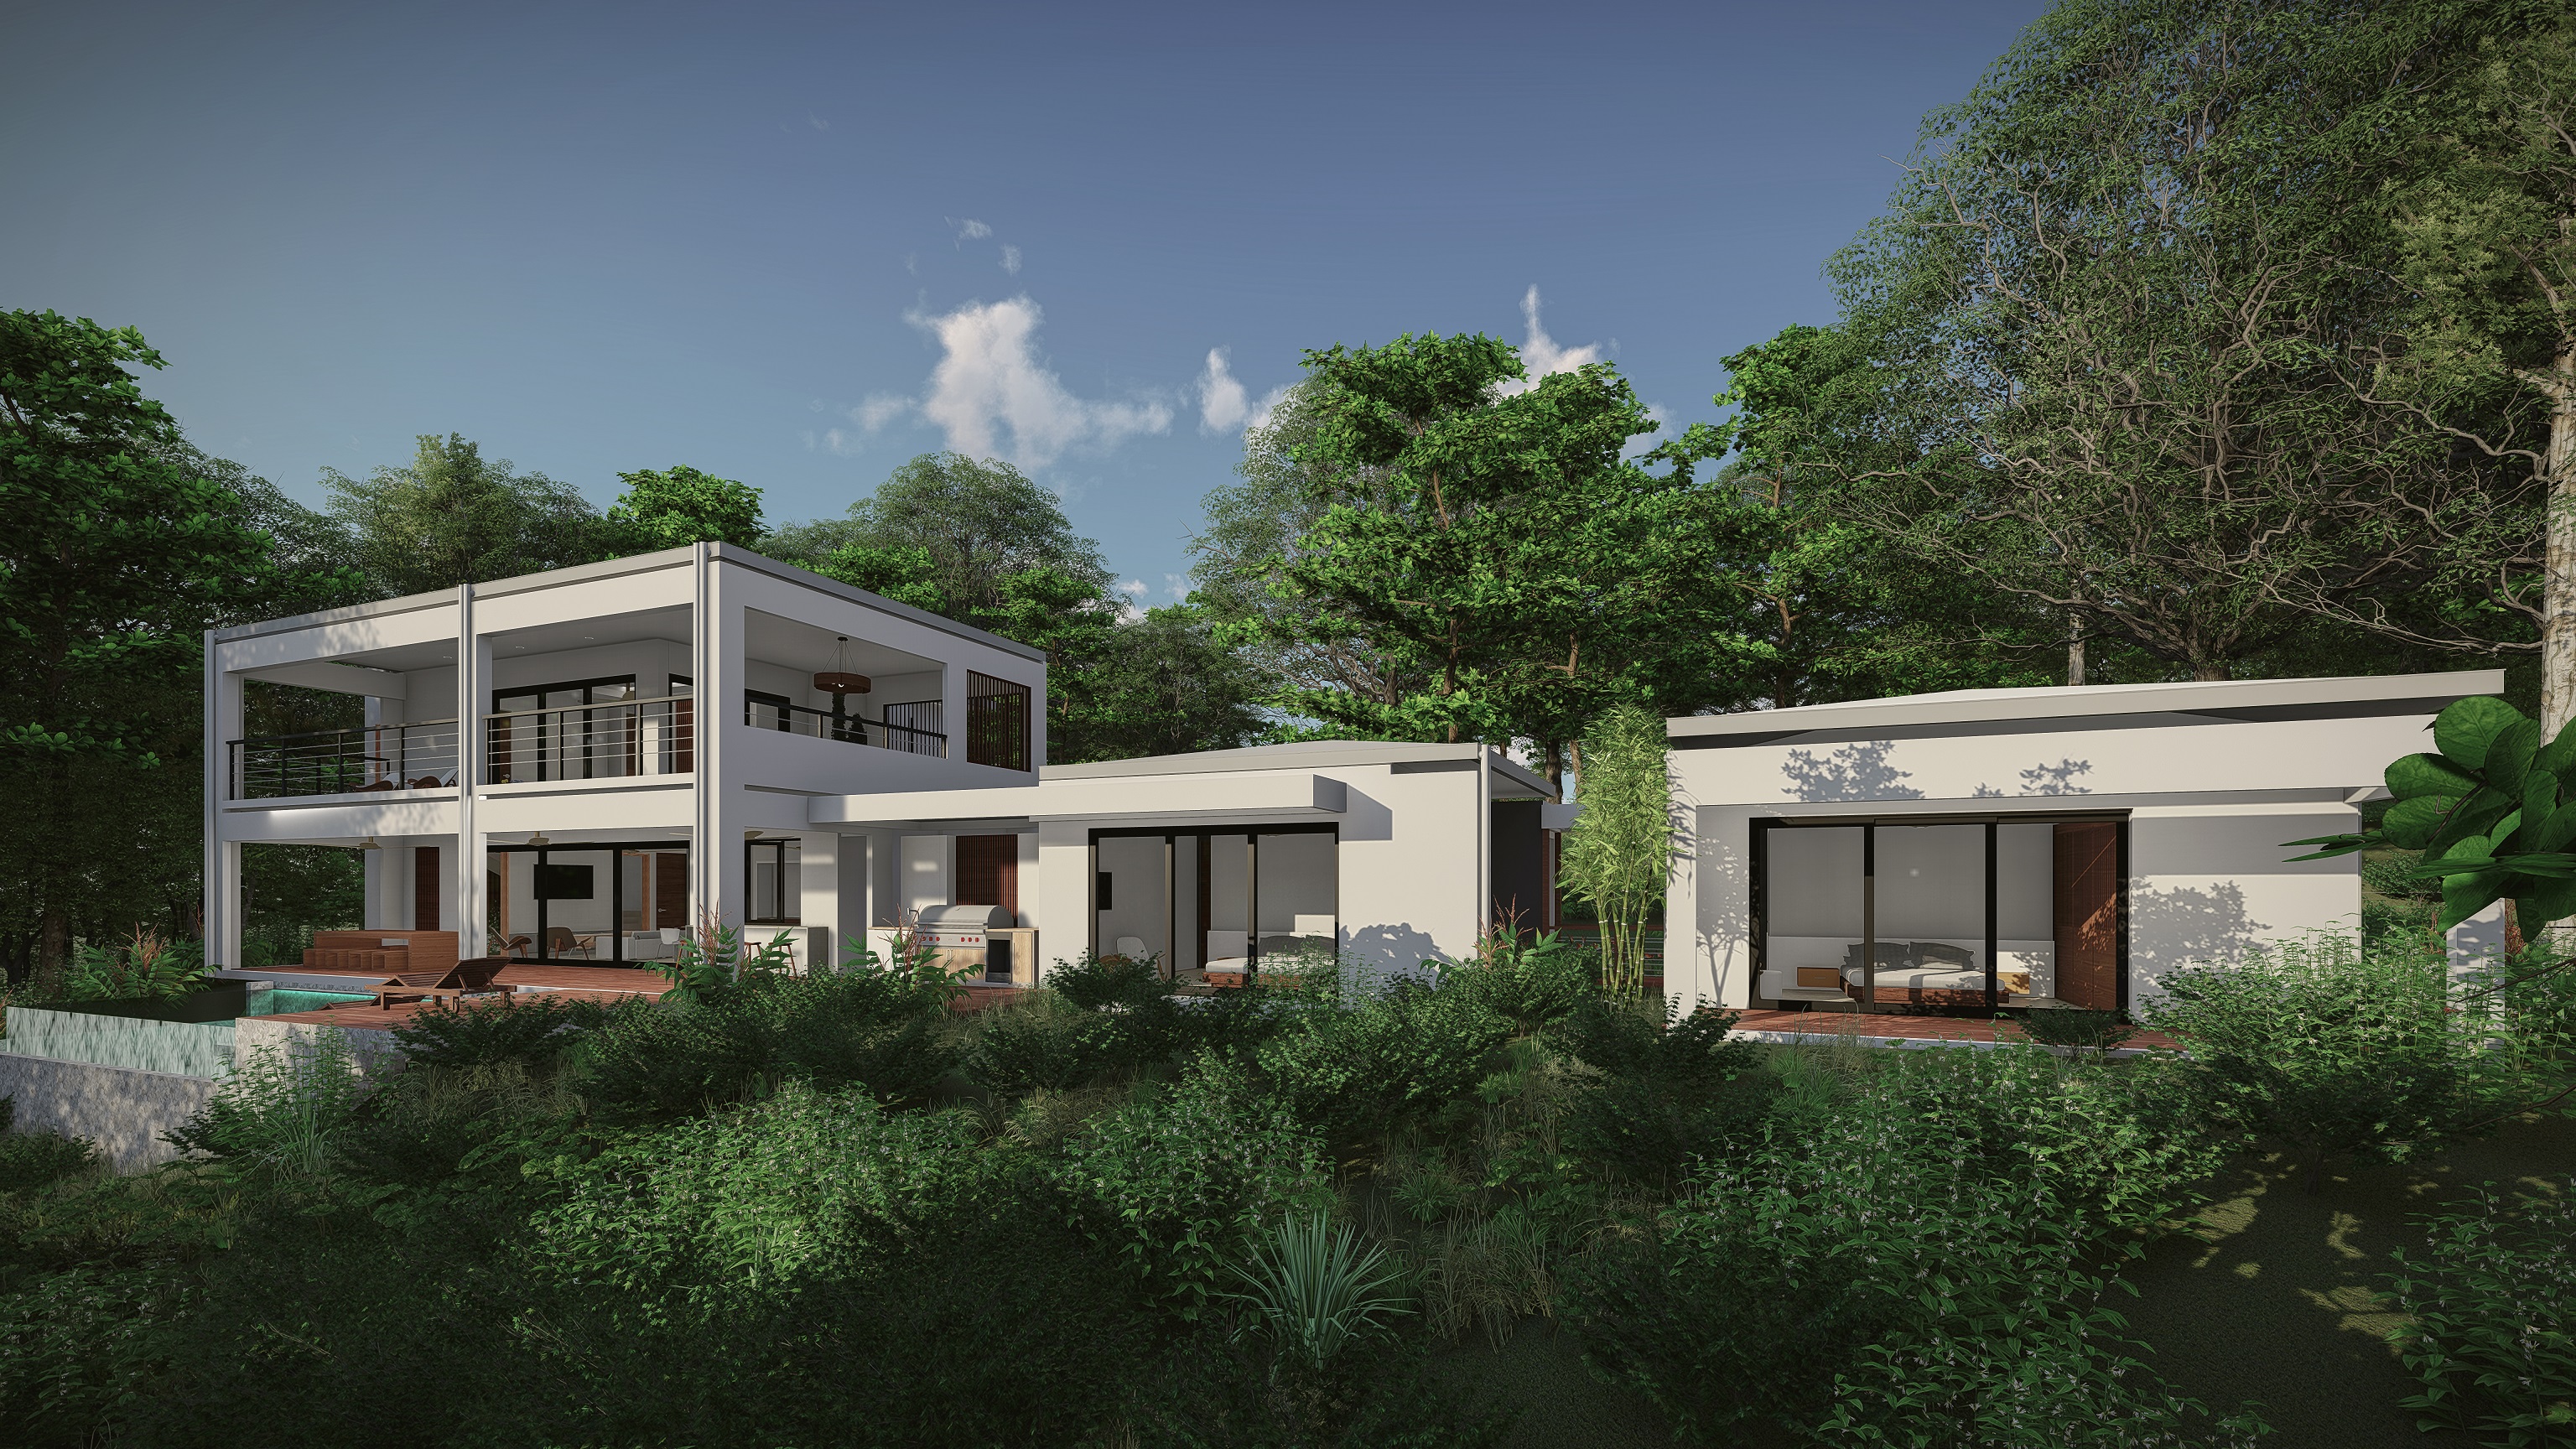 axiom costarica dulce pacifico model home development for sale uvita